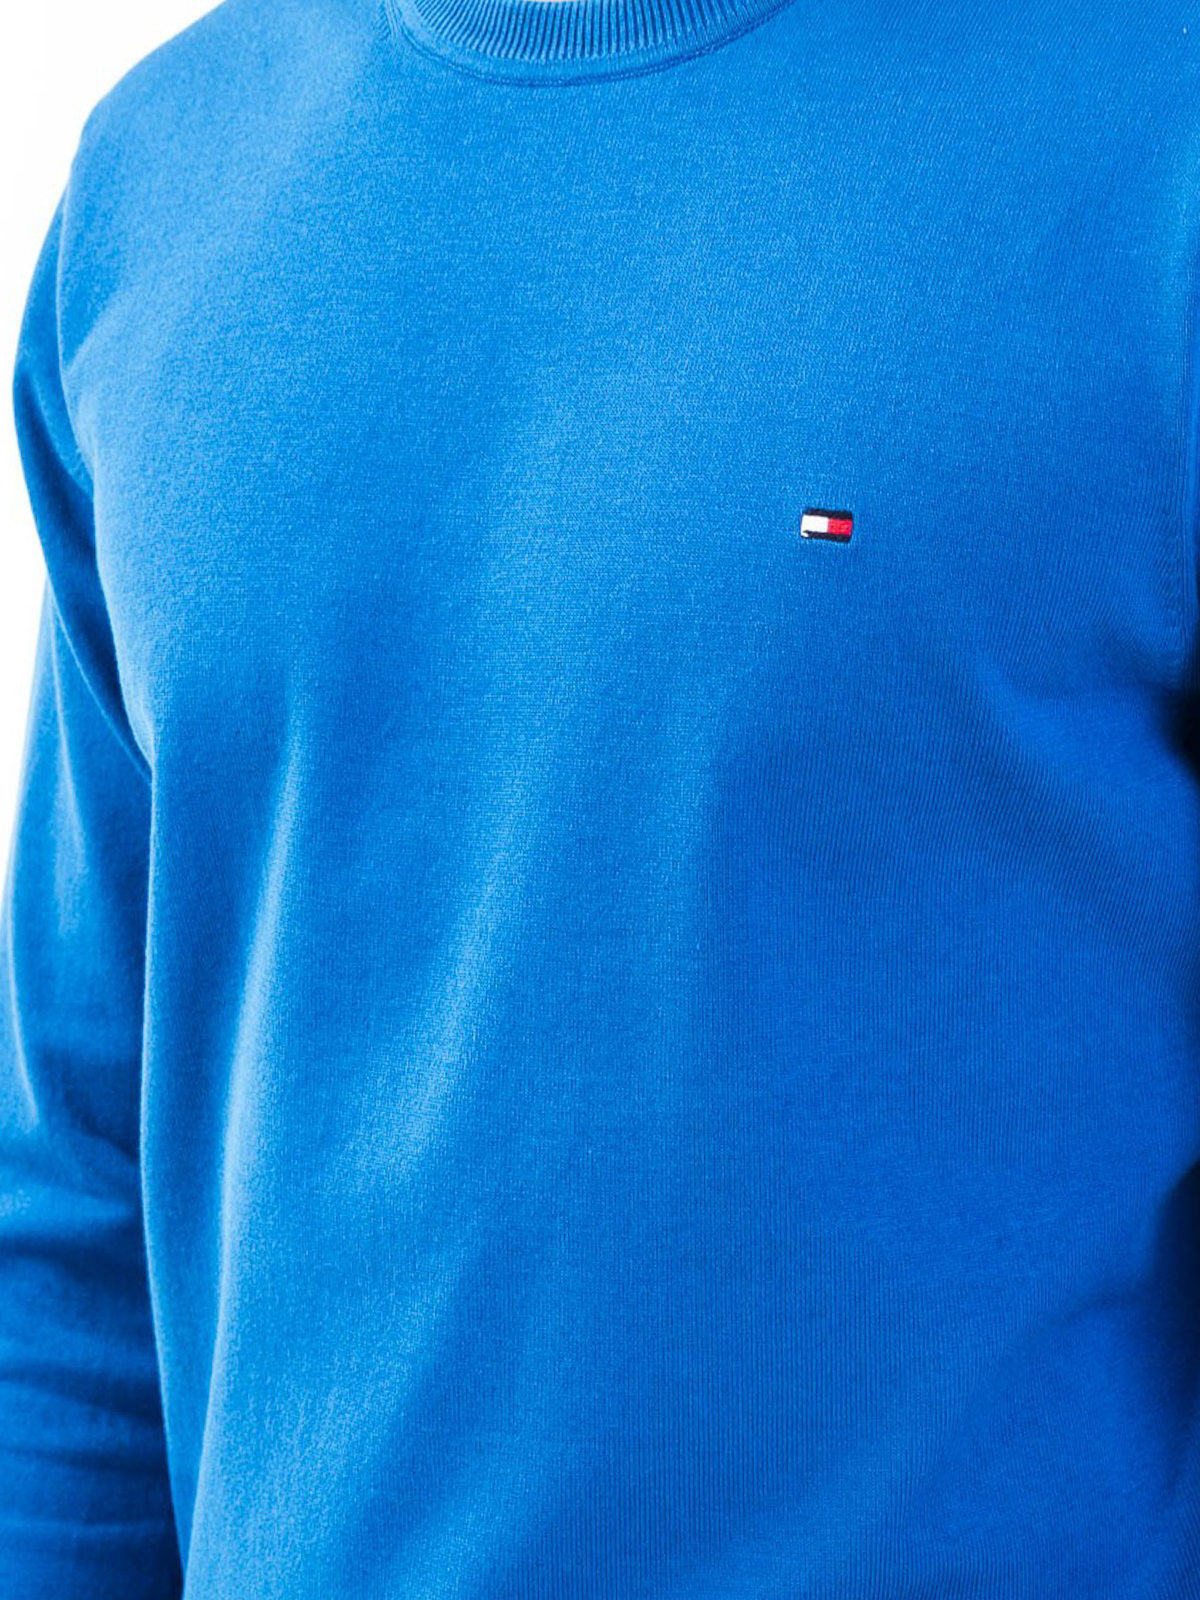 visie Imitatie Controversieel Crew necks Tommy Hilfiger - Cotton blend sweater - MW0MW13120C22